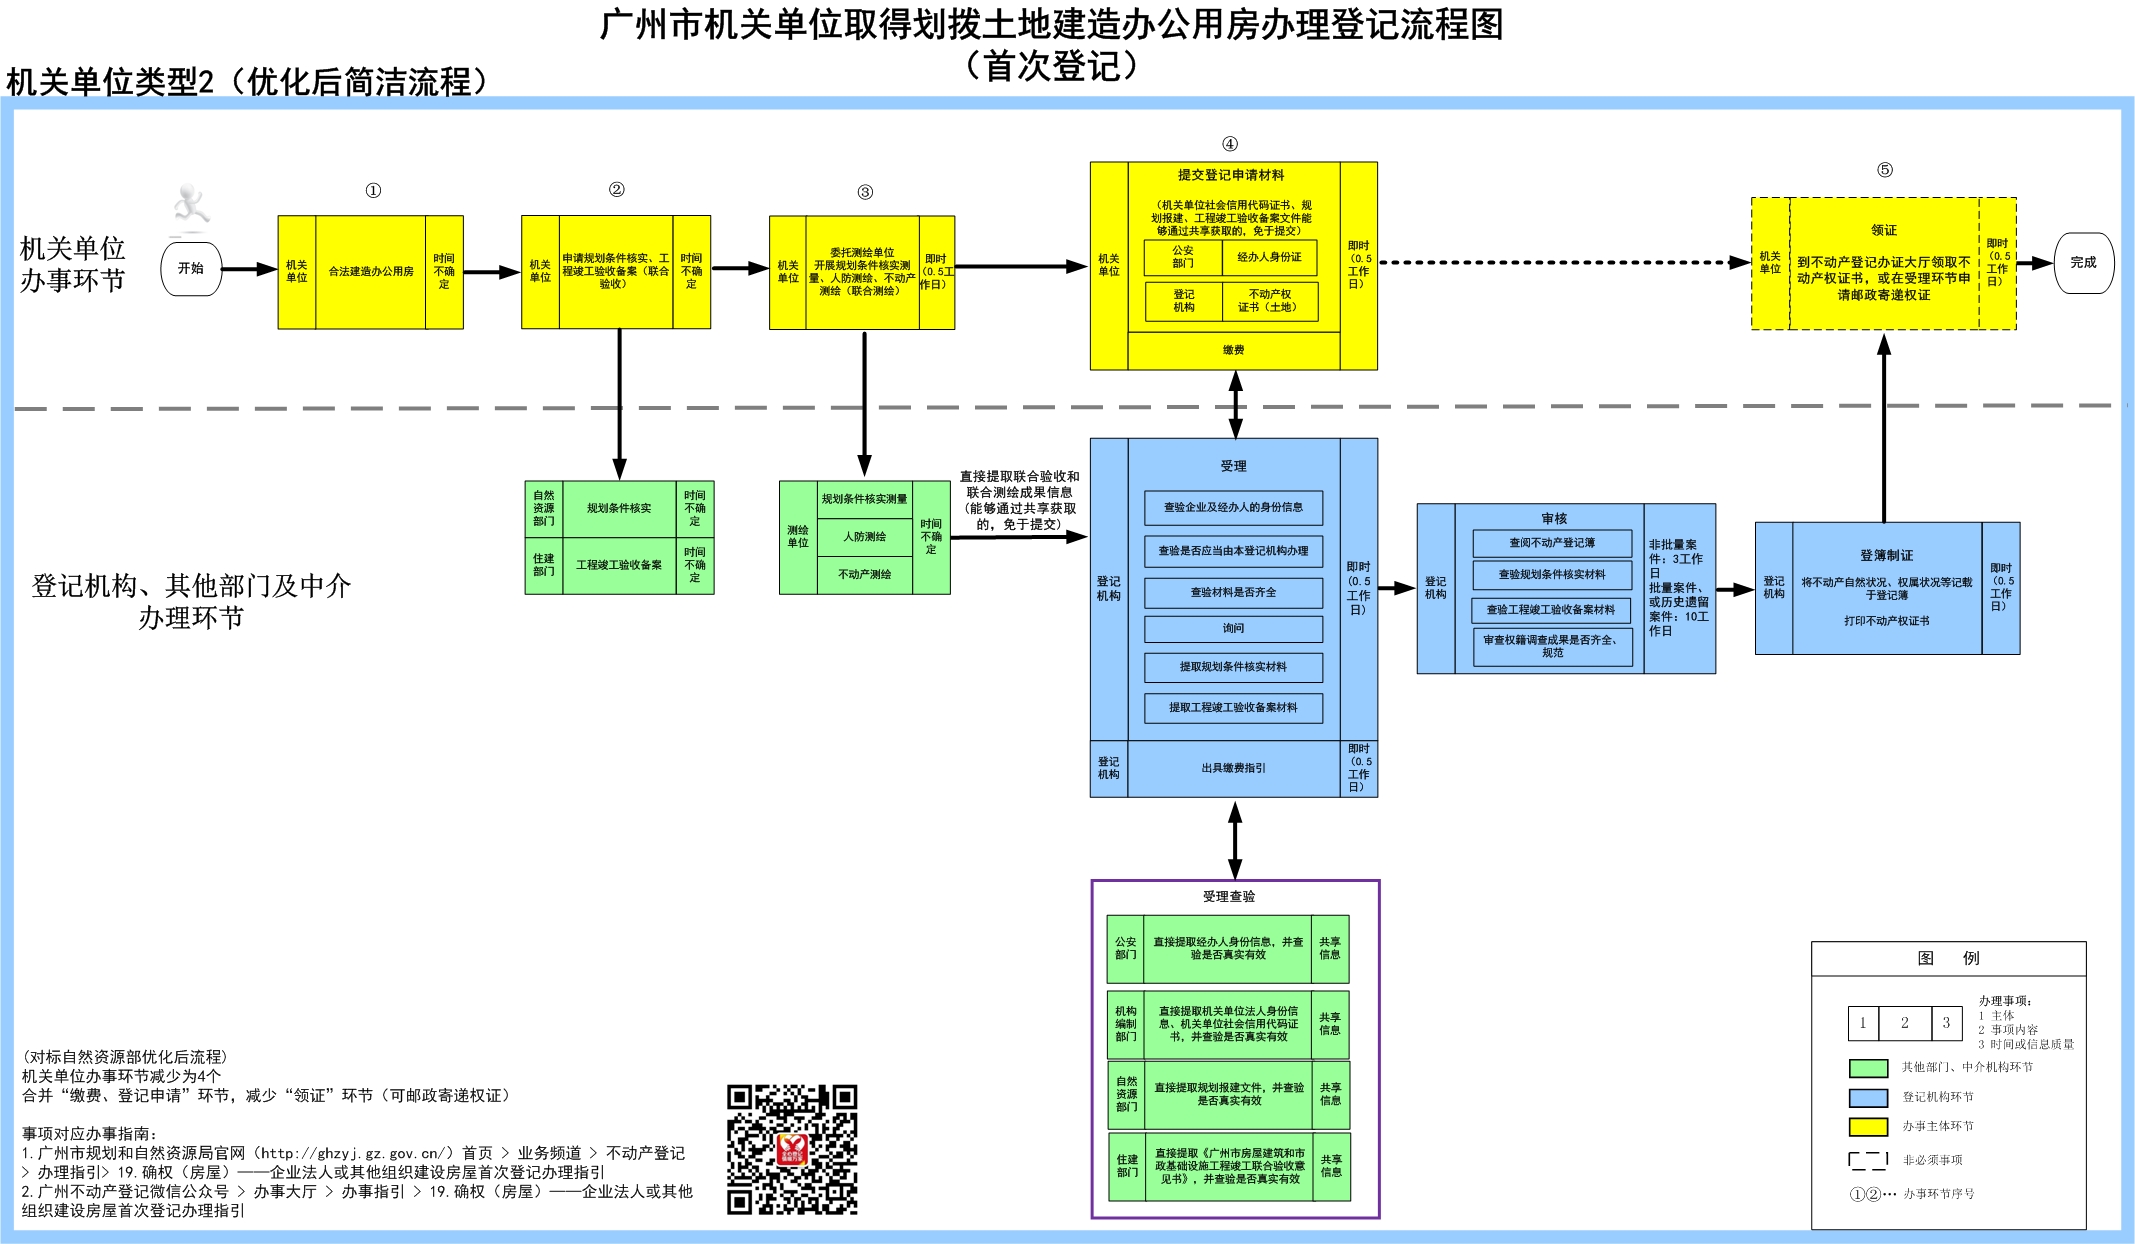 2广州市机关单位取得划拨土地建造办公用房办理登记流程（首次登记）.jpg